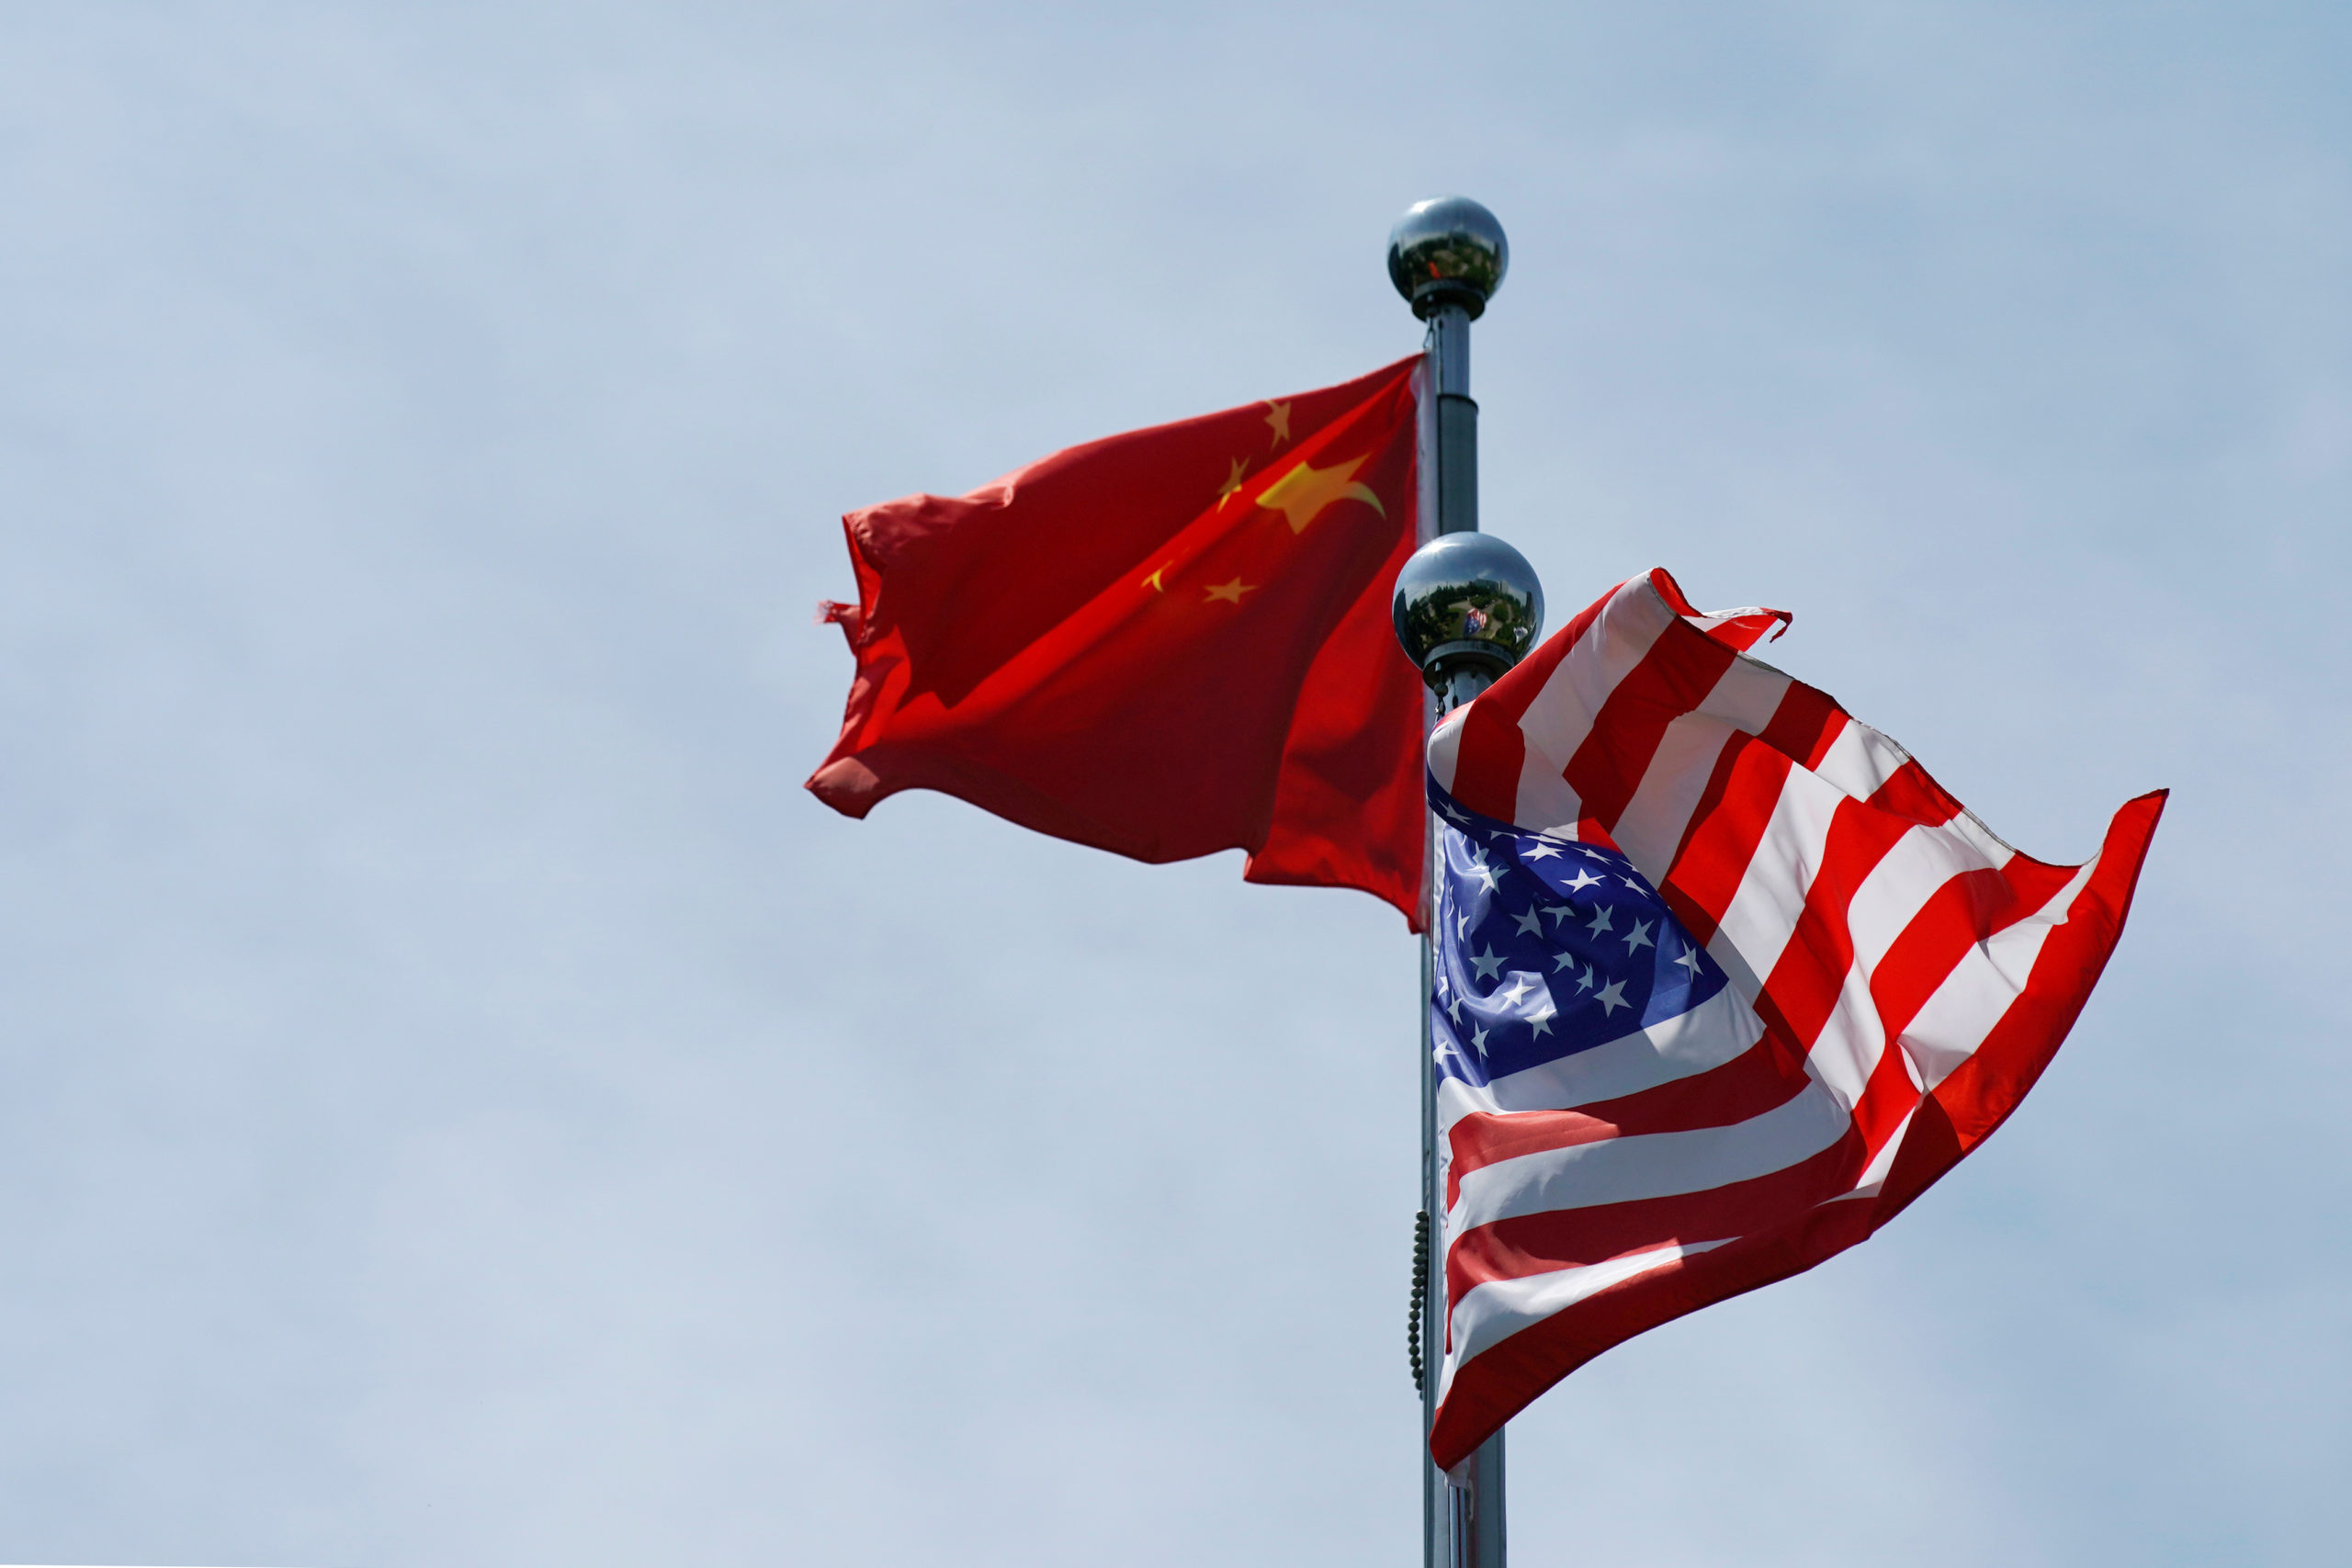 Chine: Les Américains confrontés à un risque accru de détention arbitraire, selon Washington